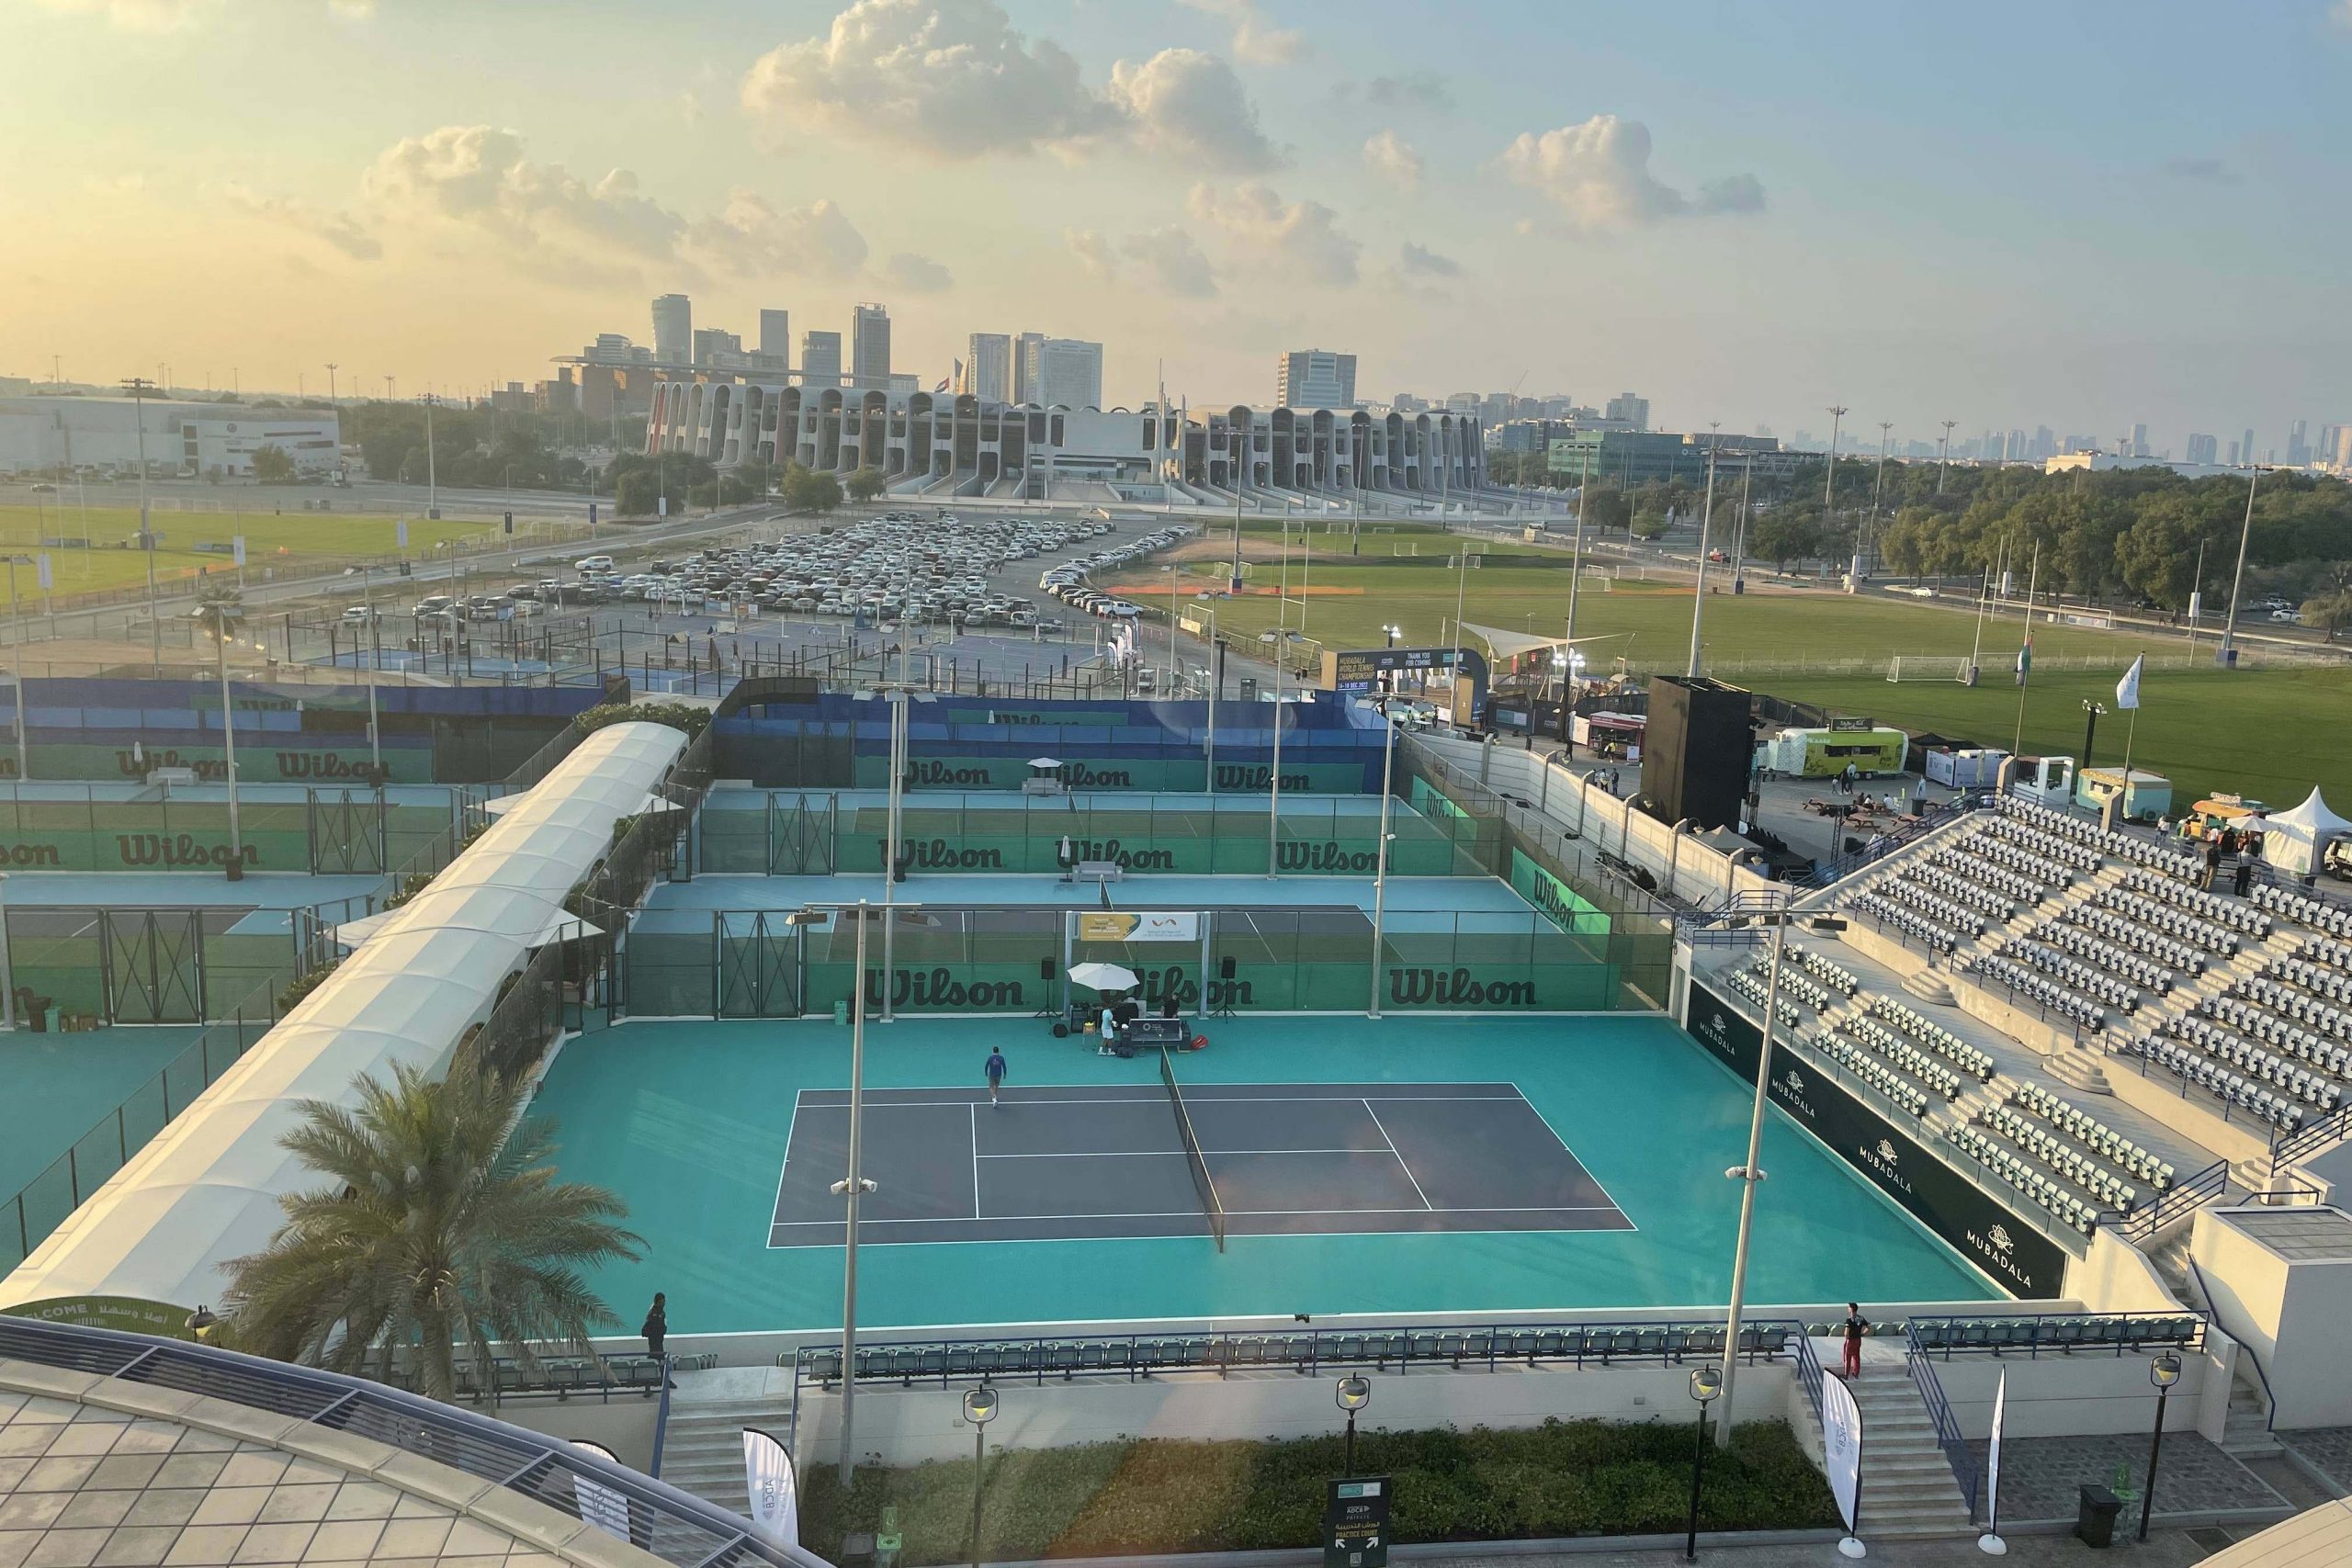 Mubadala World Tennis Championship Abu Dhabi 